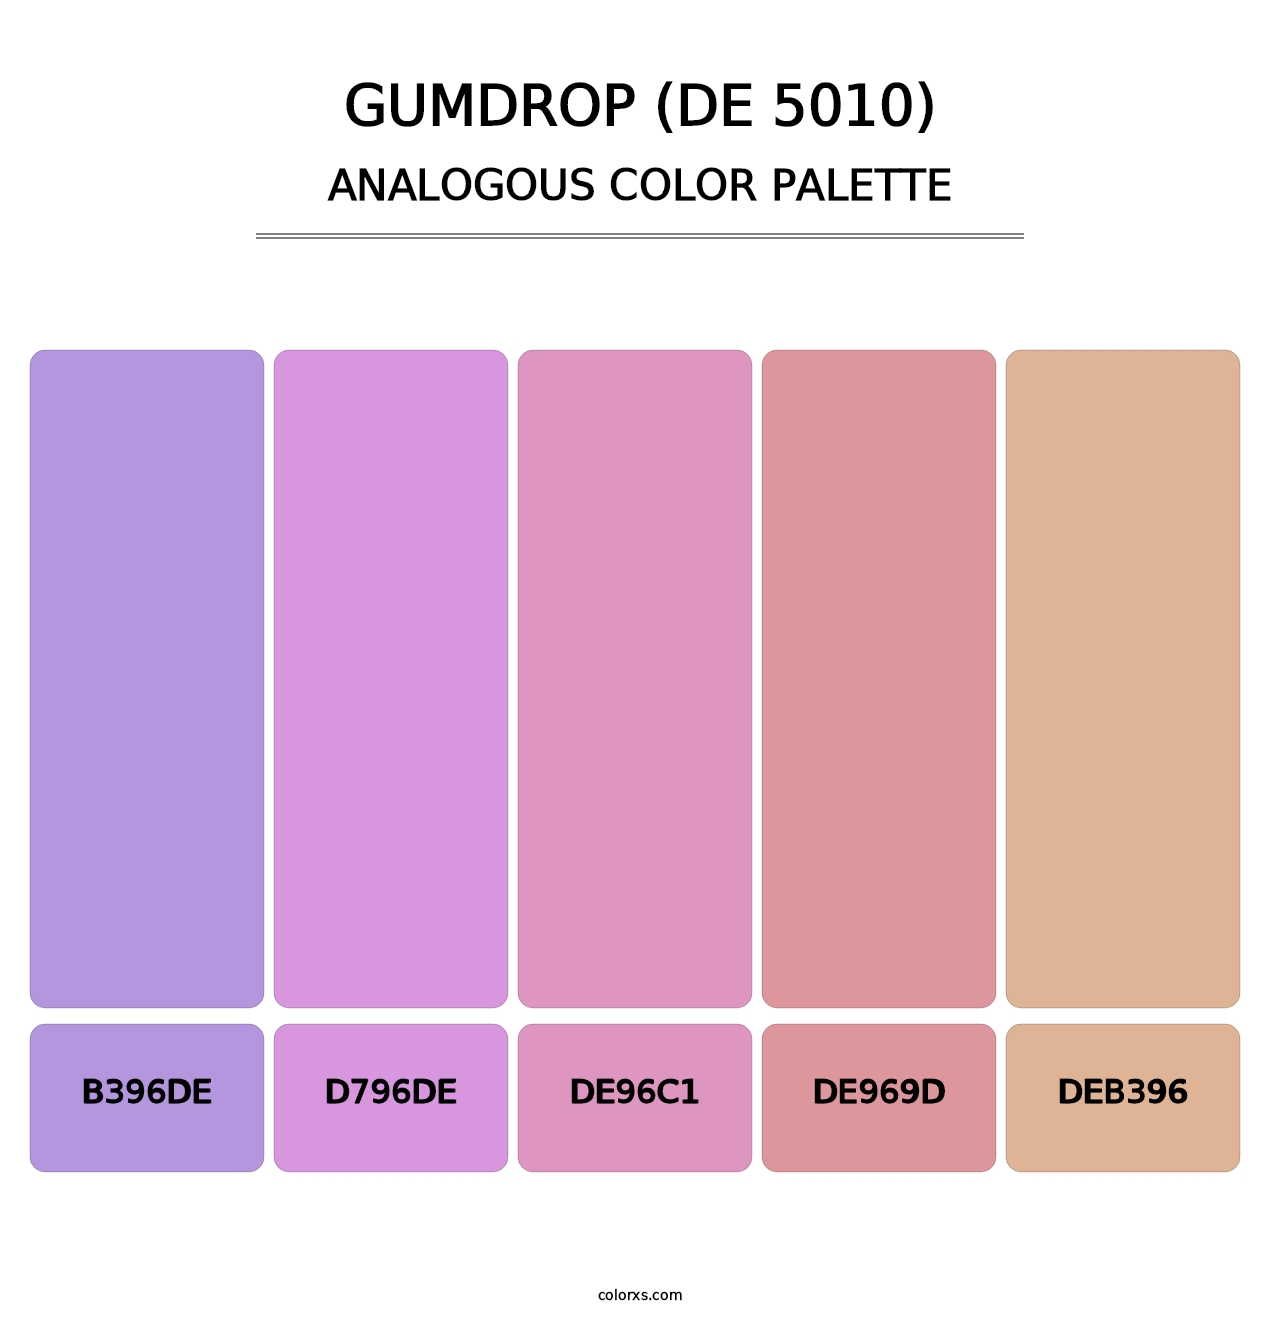 Gumdrop (DE 5010) - Analogous Color Palette